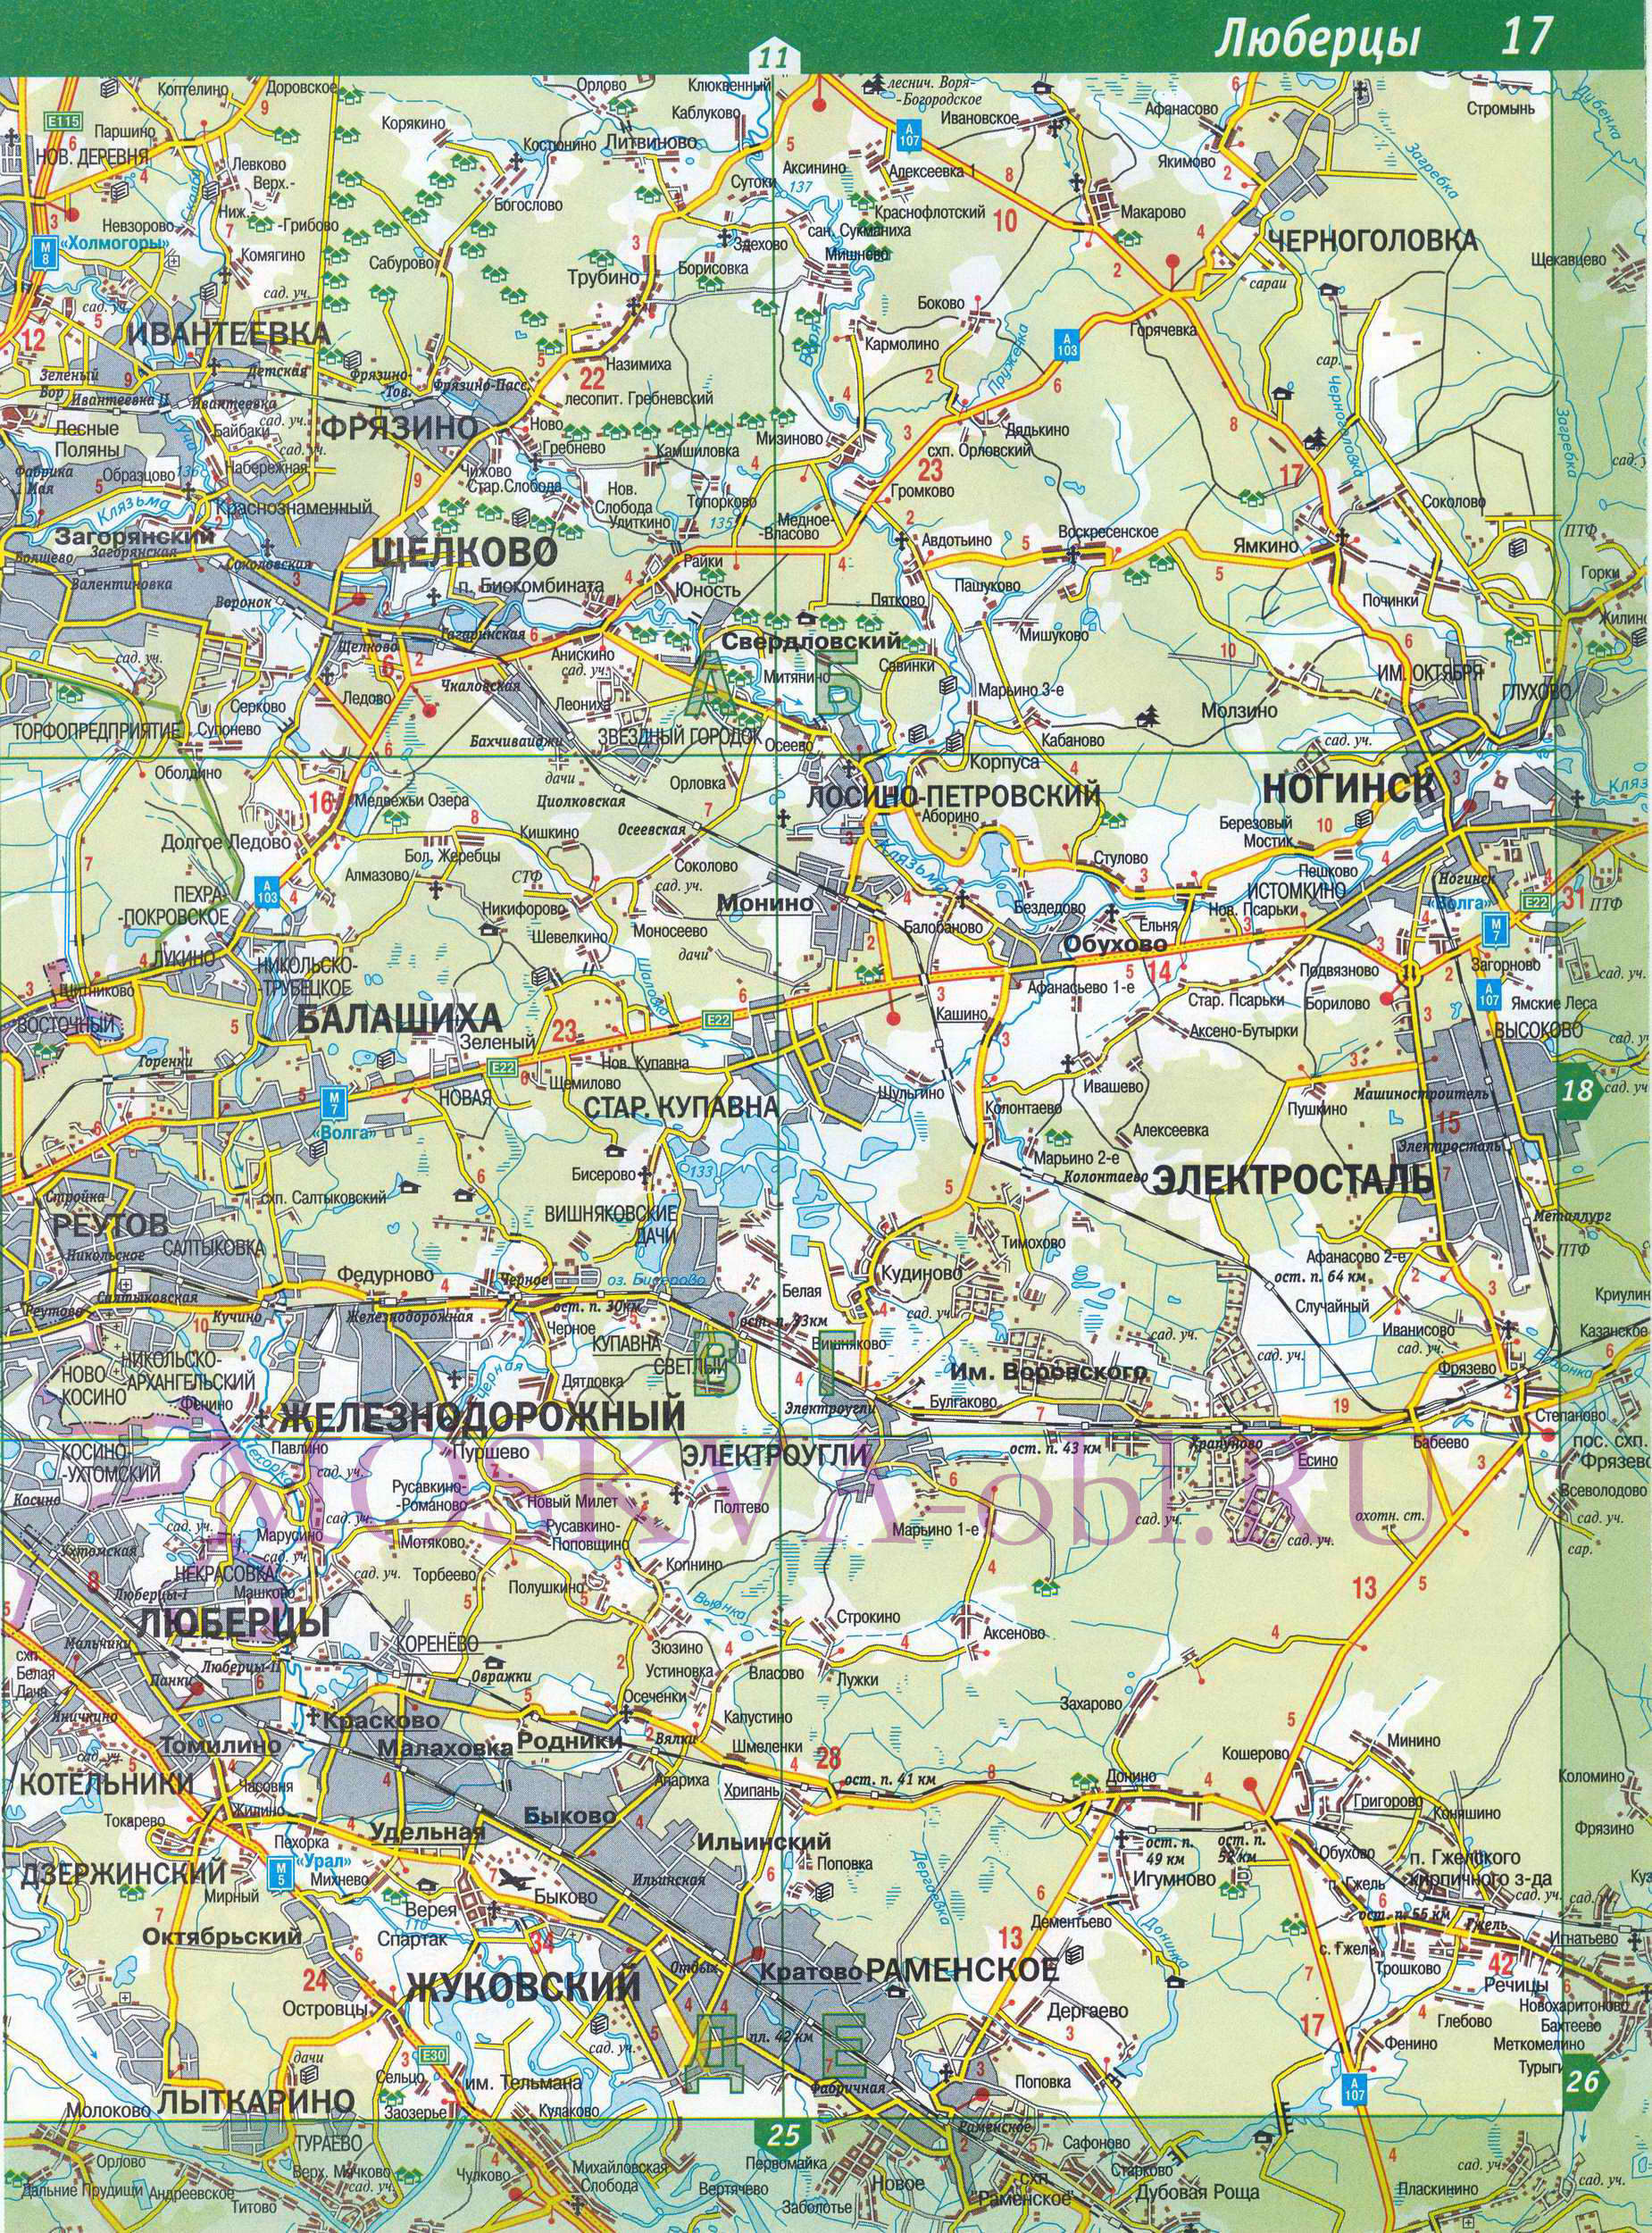 Карта Московской области. Московская область - подробная топографическая карта масштаба 1см:2км, D1 - 